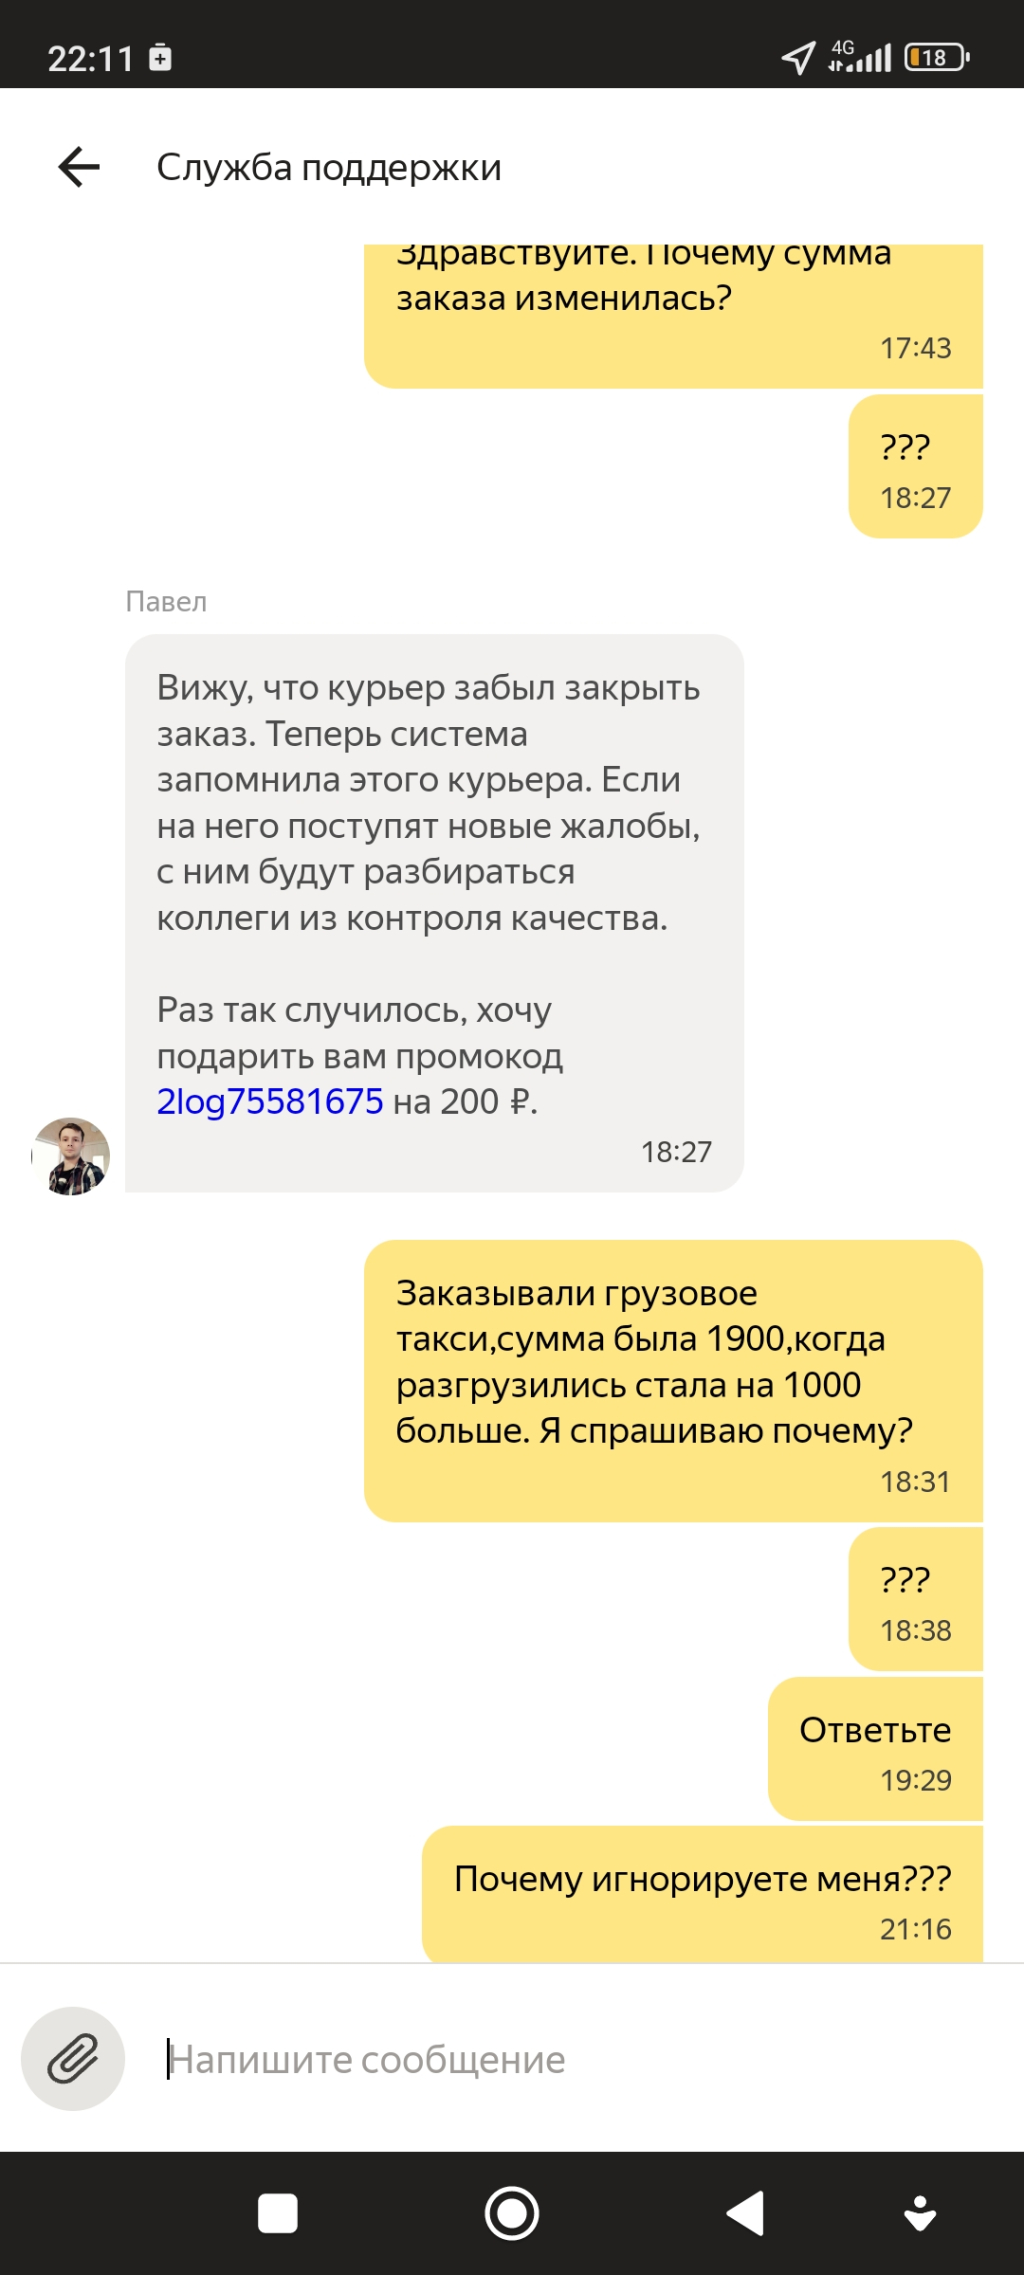 Яндекс Такси - Без объяснений завысили цену!!!